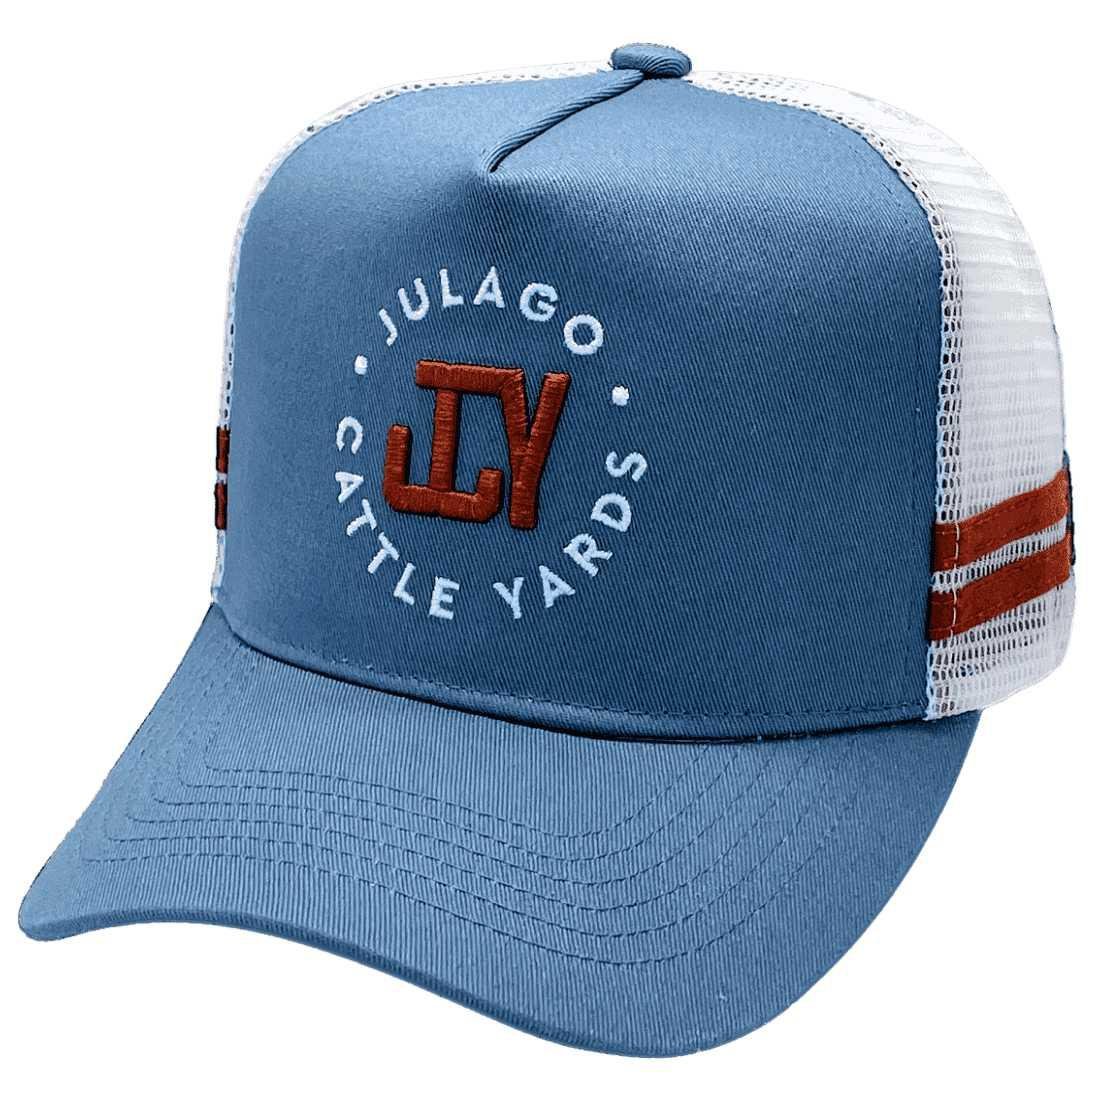 Julago Cattle Yards HP Midrange Aussie Trucker Hats Blue/White